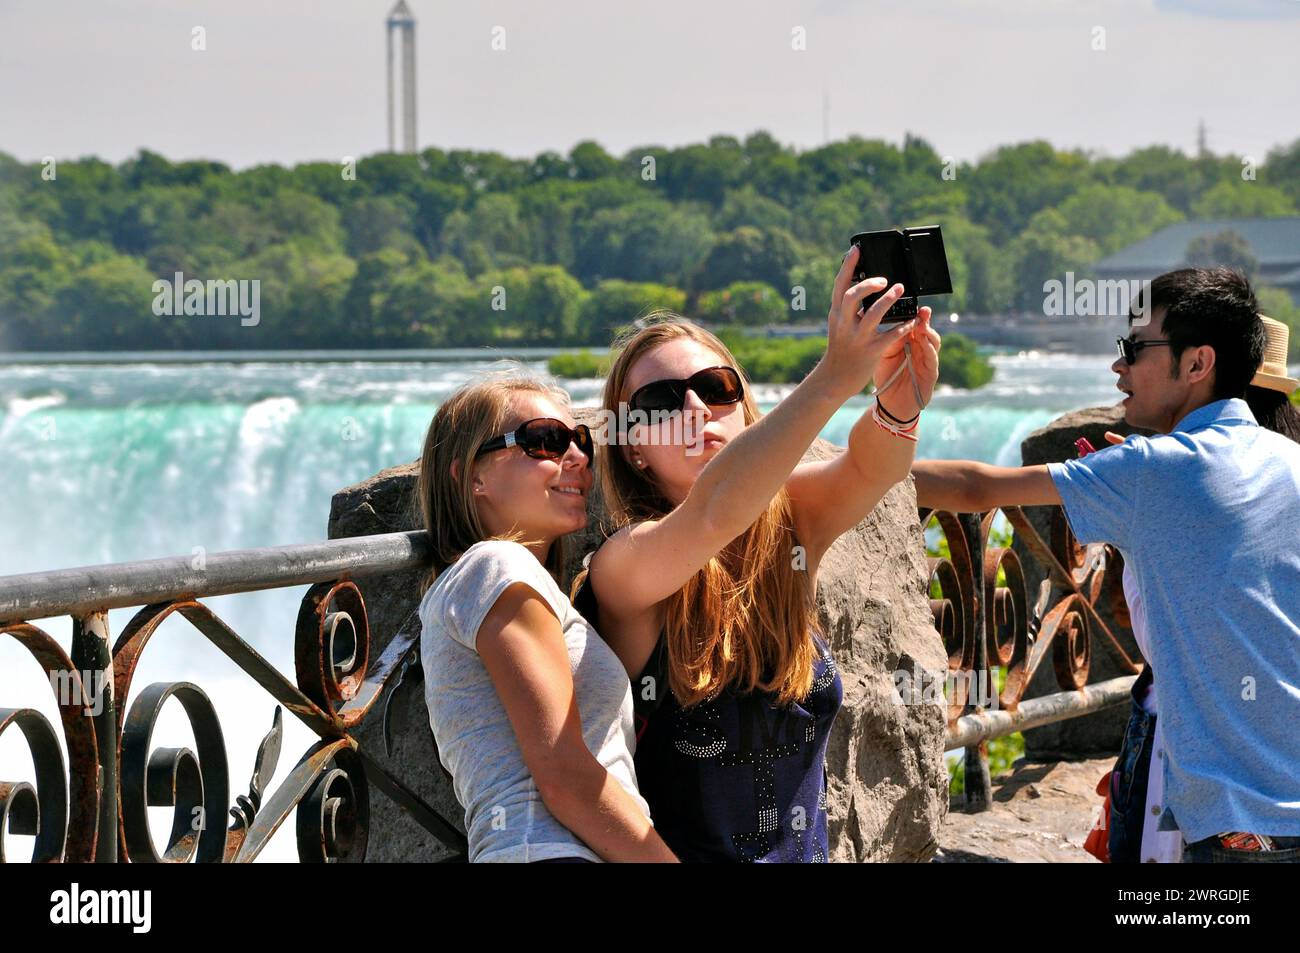 Les visiteurs des chutes du Niagara prennent des selfies du côté canadien. Banque D'Images